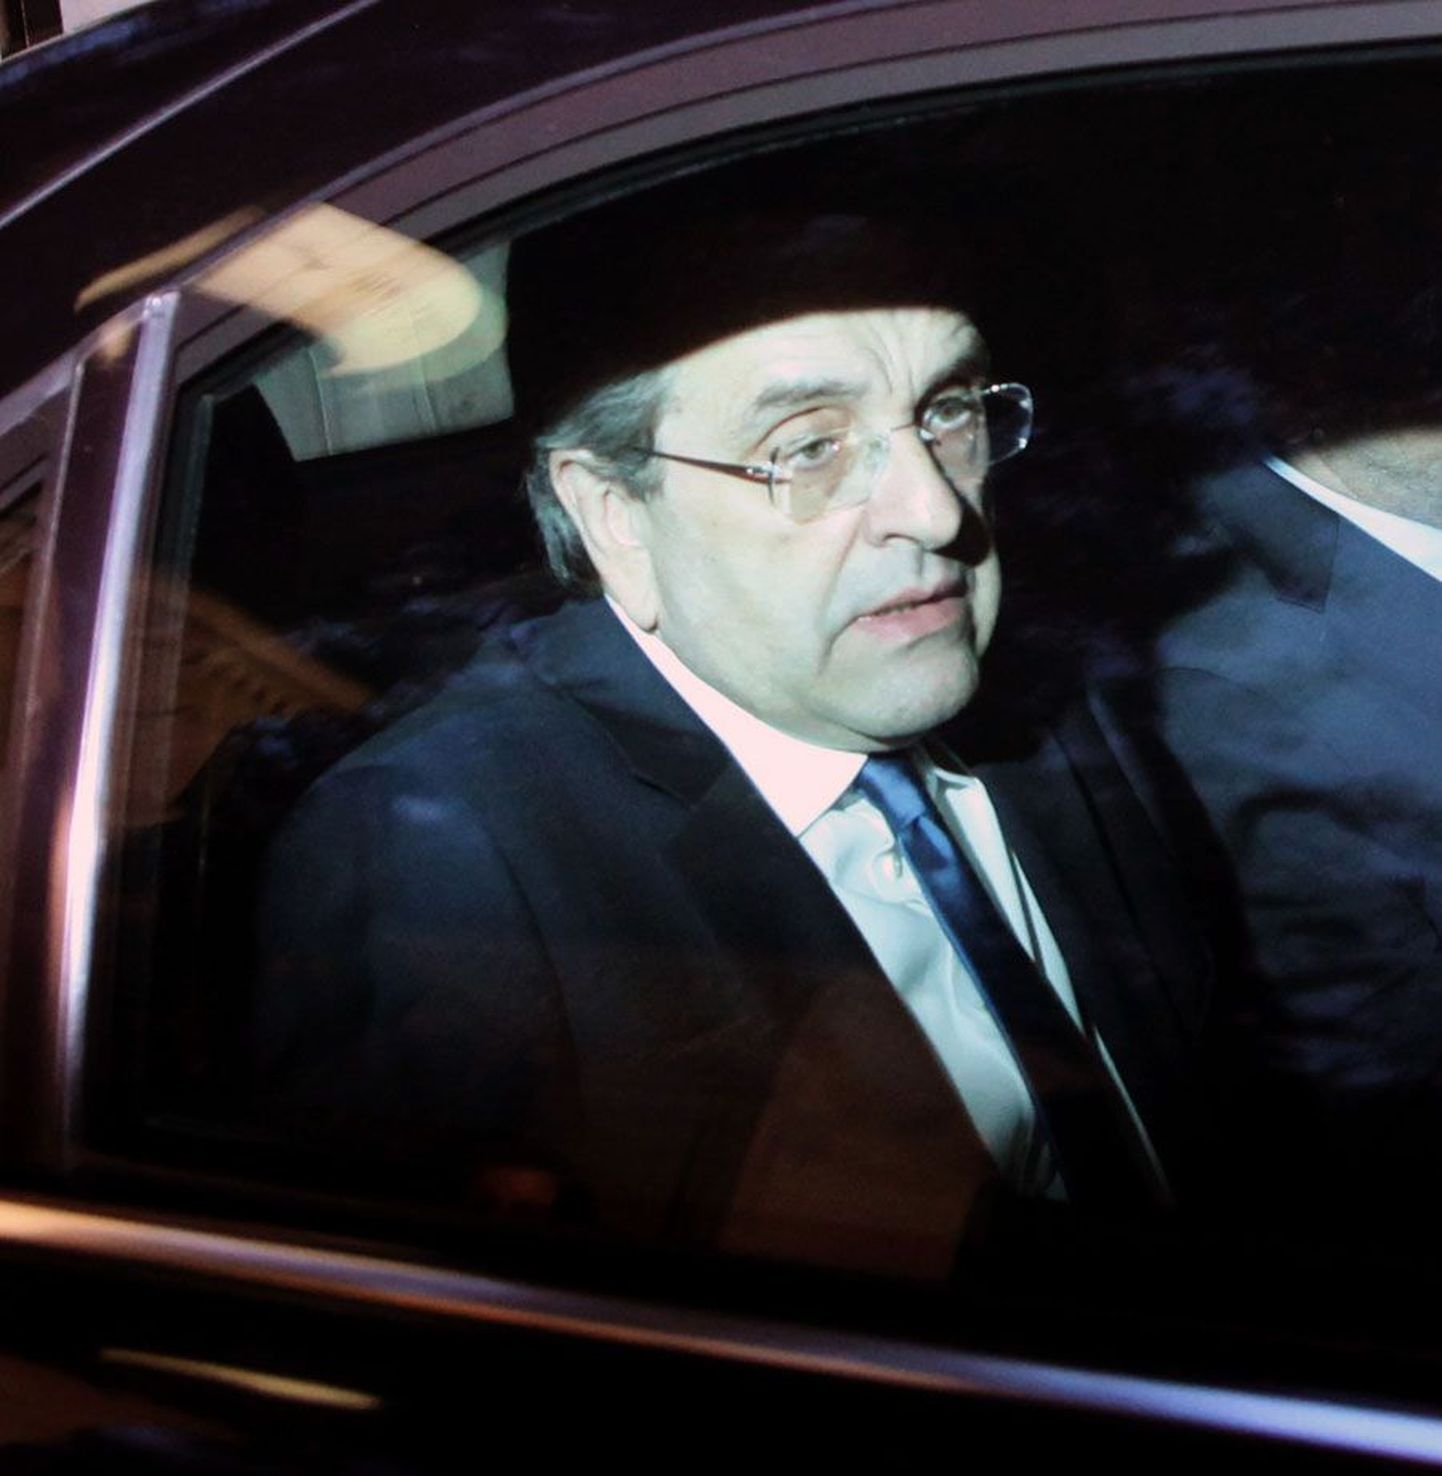 Kreeka konservatiivide väsinud liider Antonis Samaras eile Ateenas presidendilossist lahkumas, et täna sinna jälle naasta.